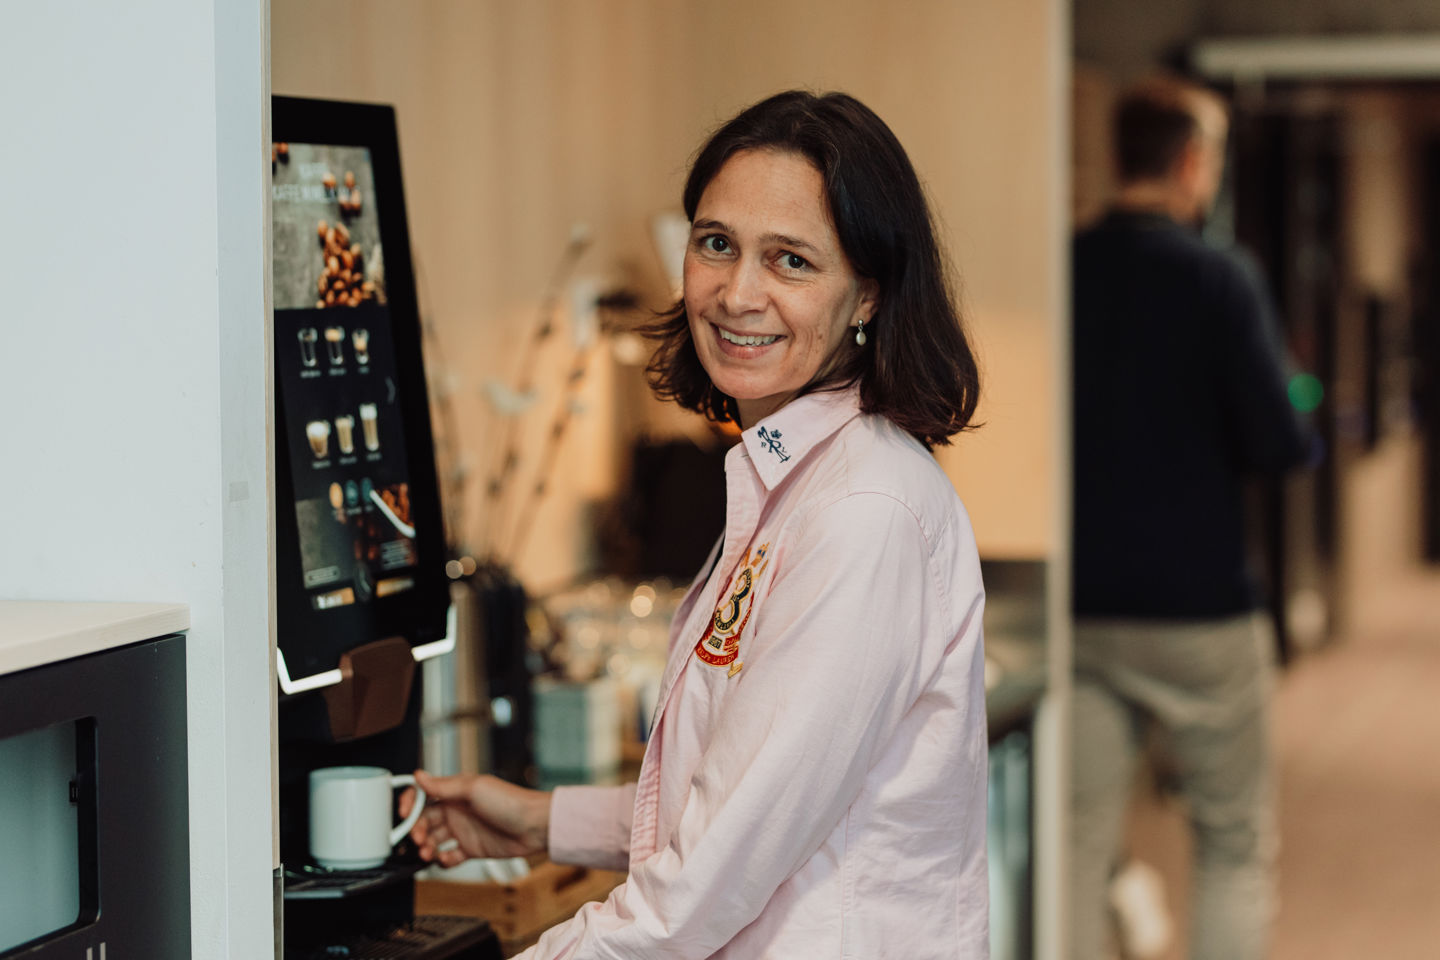 Beatriz Friscione som står ved kaffemaskinen og venter på en kaffe.
Foto: Karoline Rage